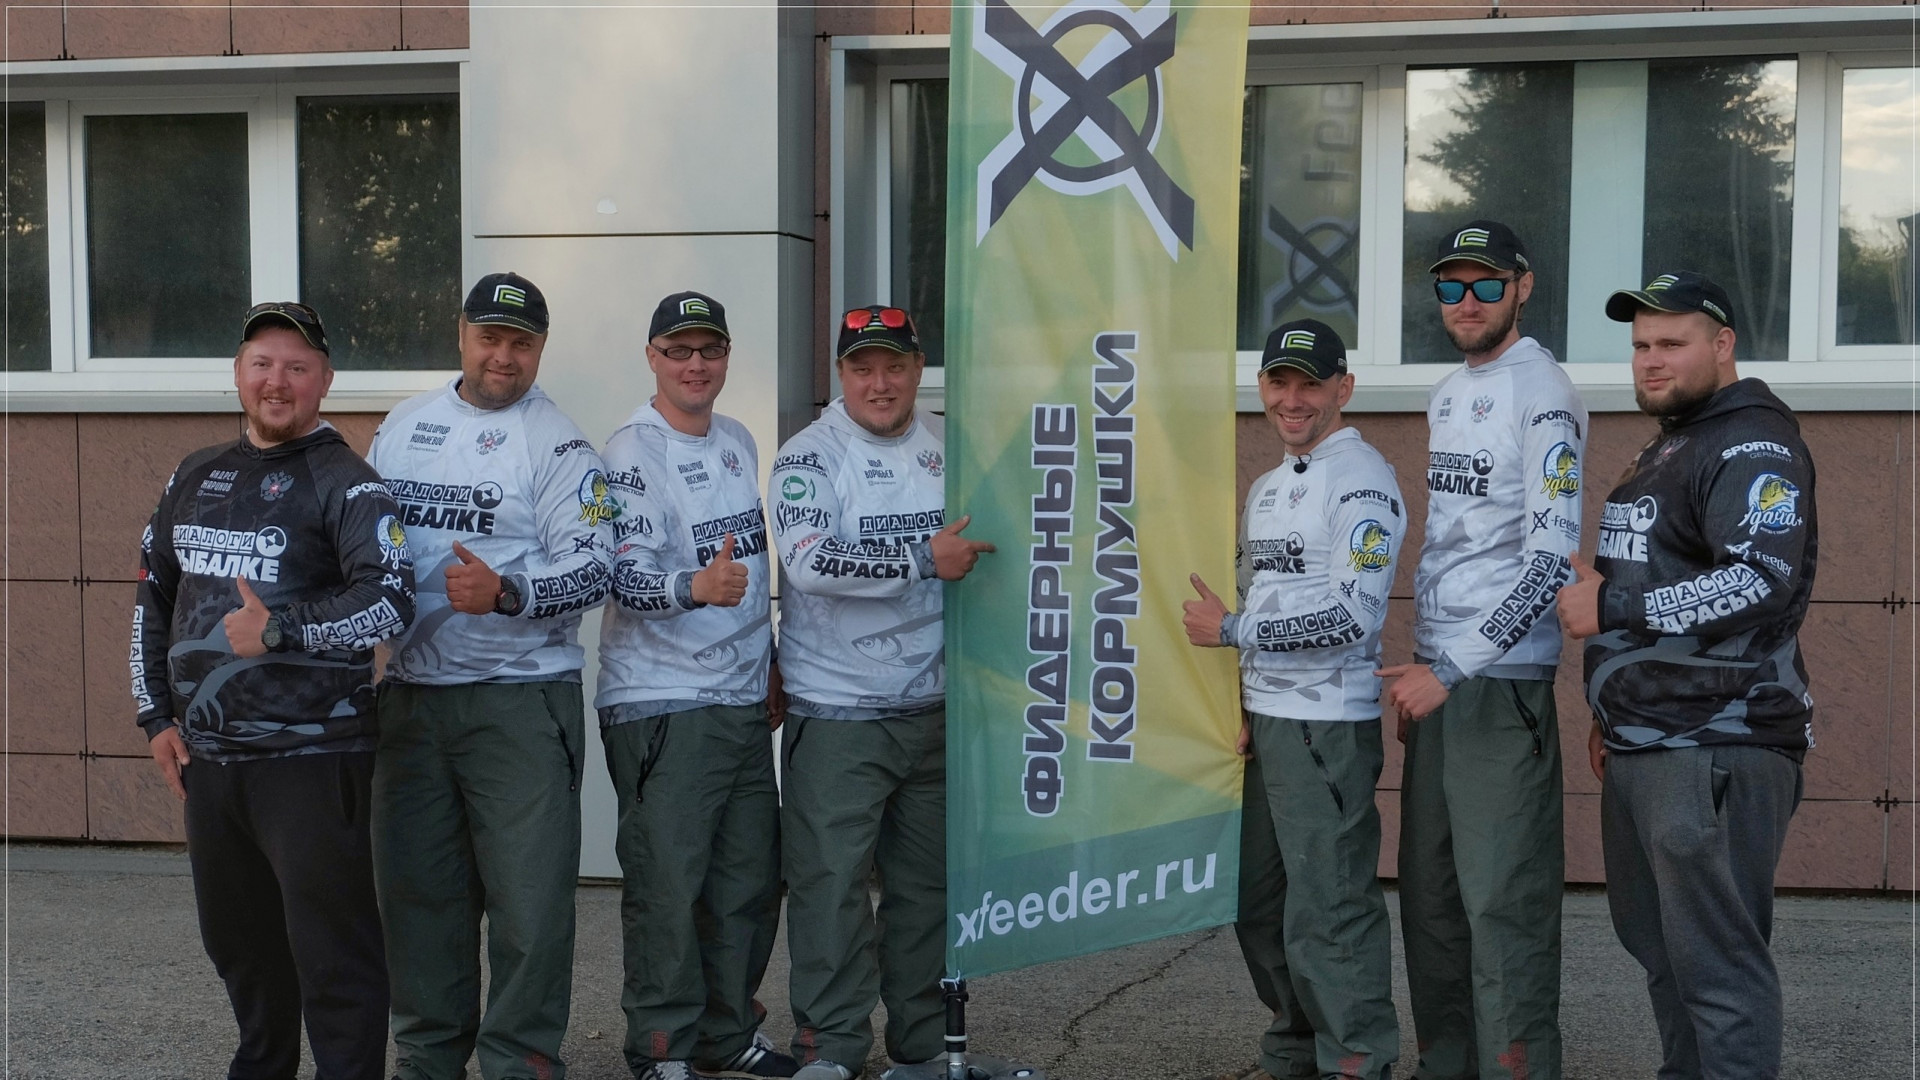 Команда Диалоги о рыбалке с флагом X-Feeder во время Кубка России по фидеру в 2019 году